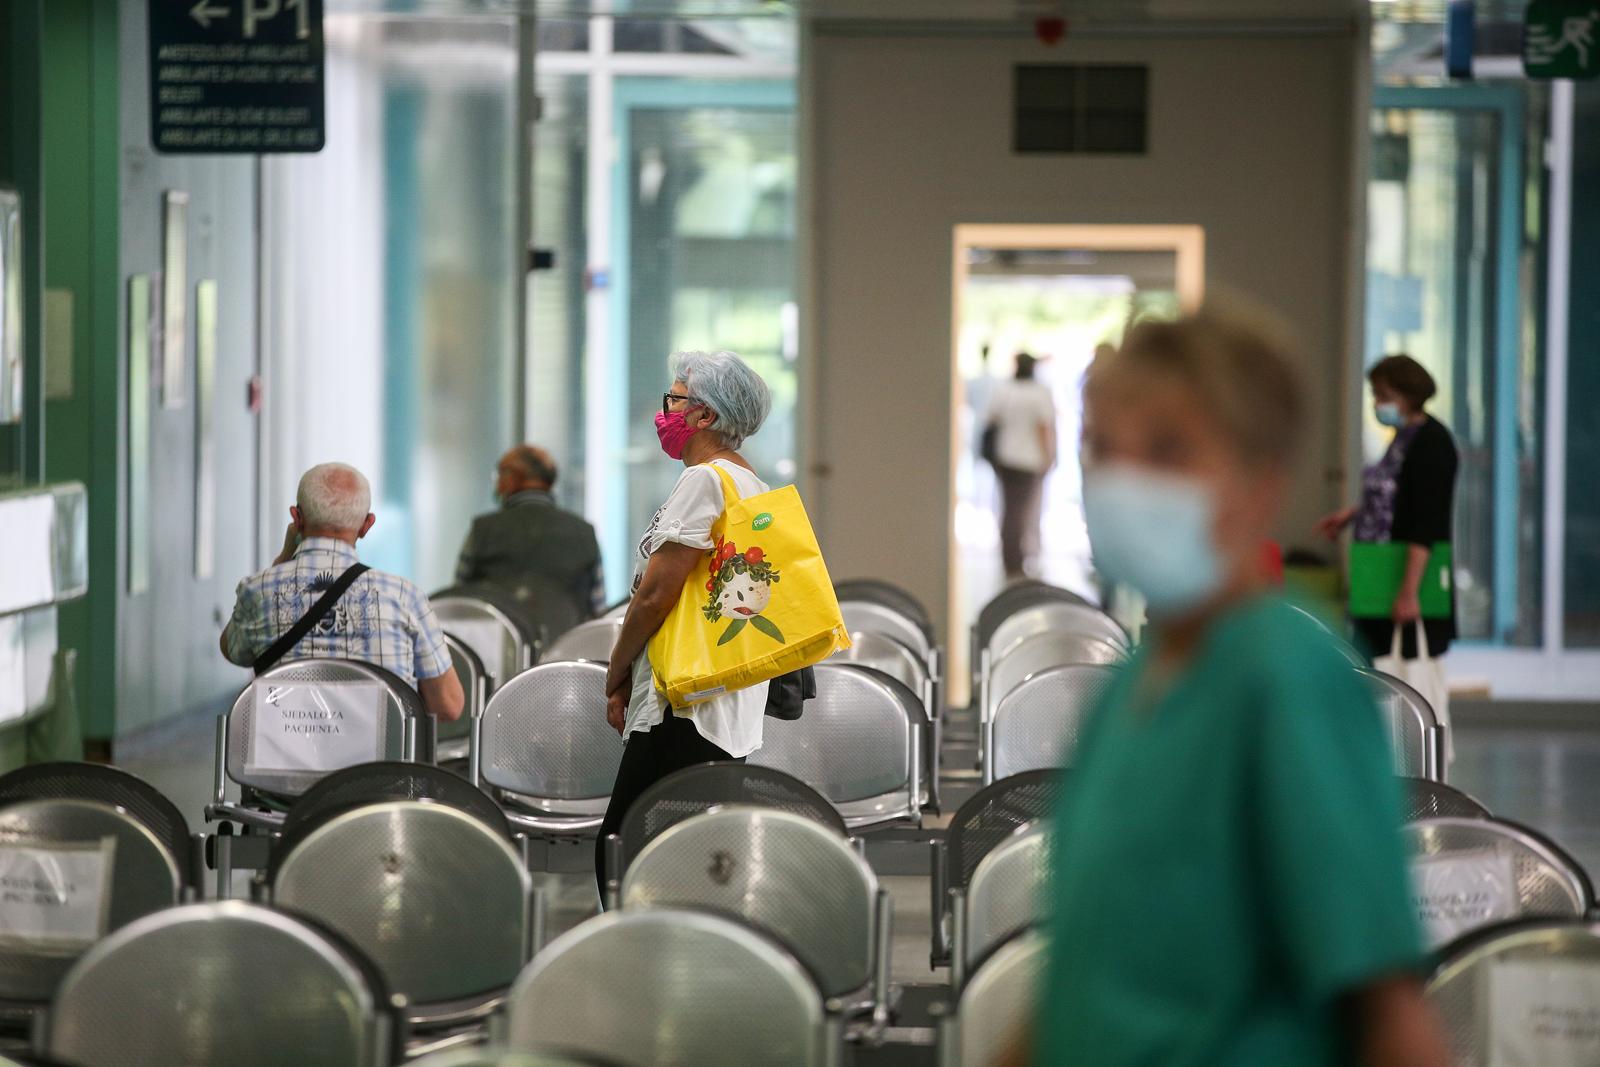 06.06.2021., Zagreb - Klinicka bolnica Dubrava otvorila je nakon 217 dana vrata za pacijente koji nisu zarazeni koronavirusom.
Photo: Zeljko Hladika/Pixsell